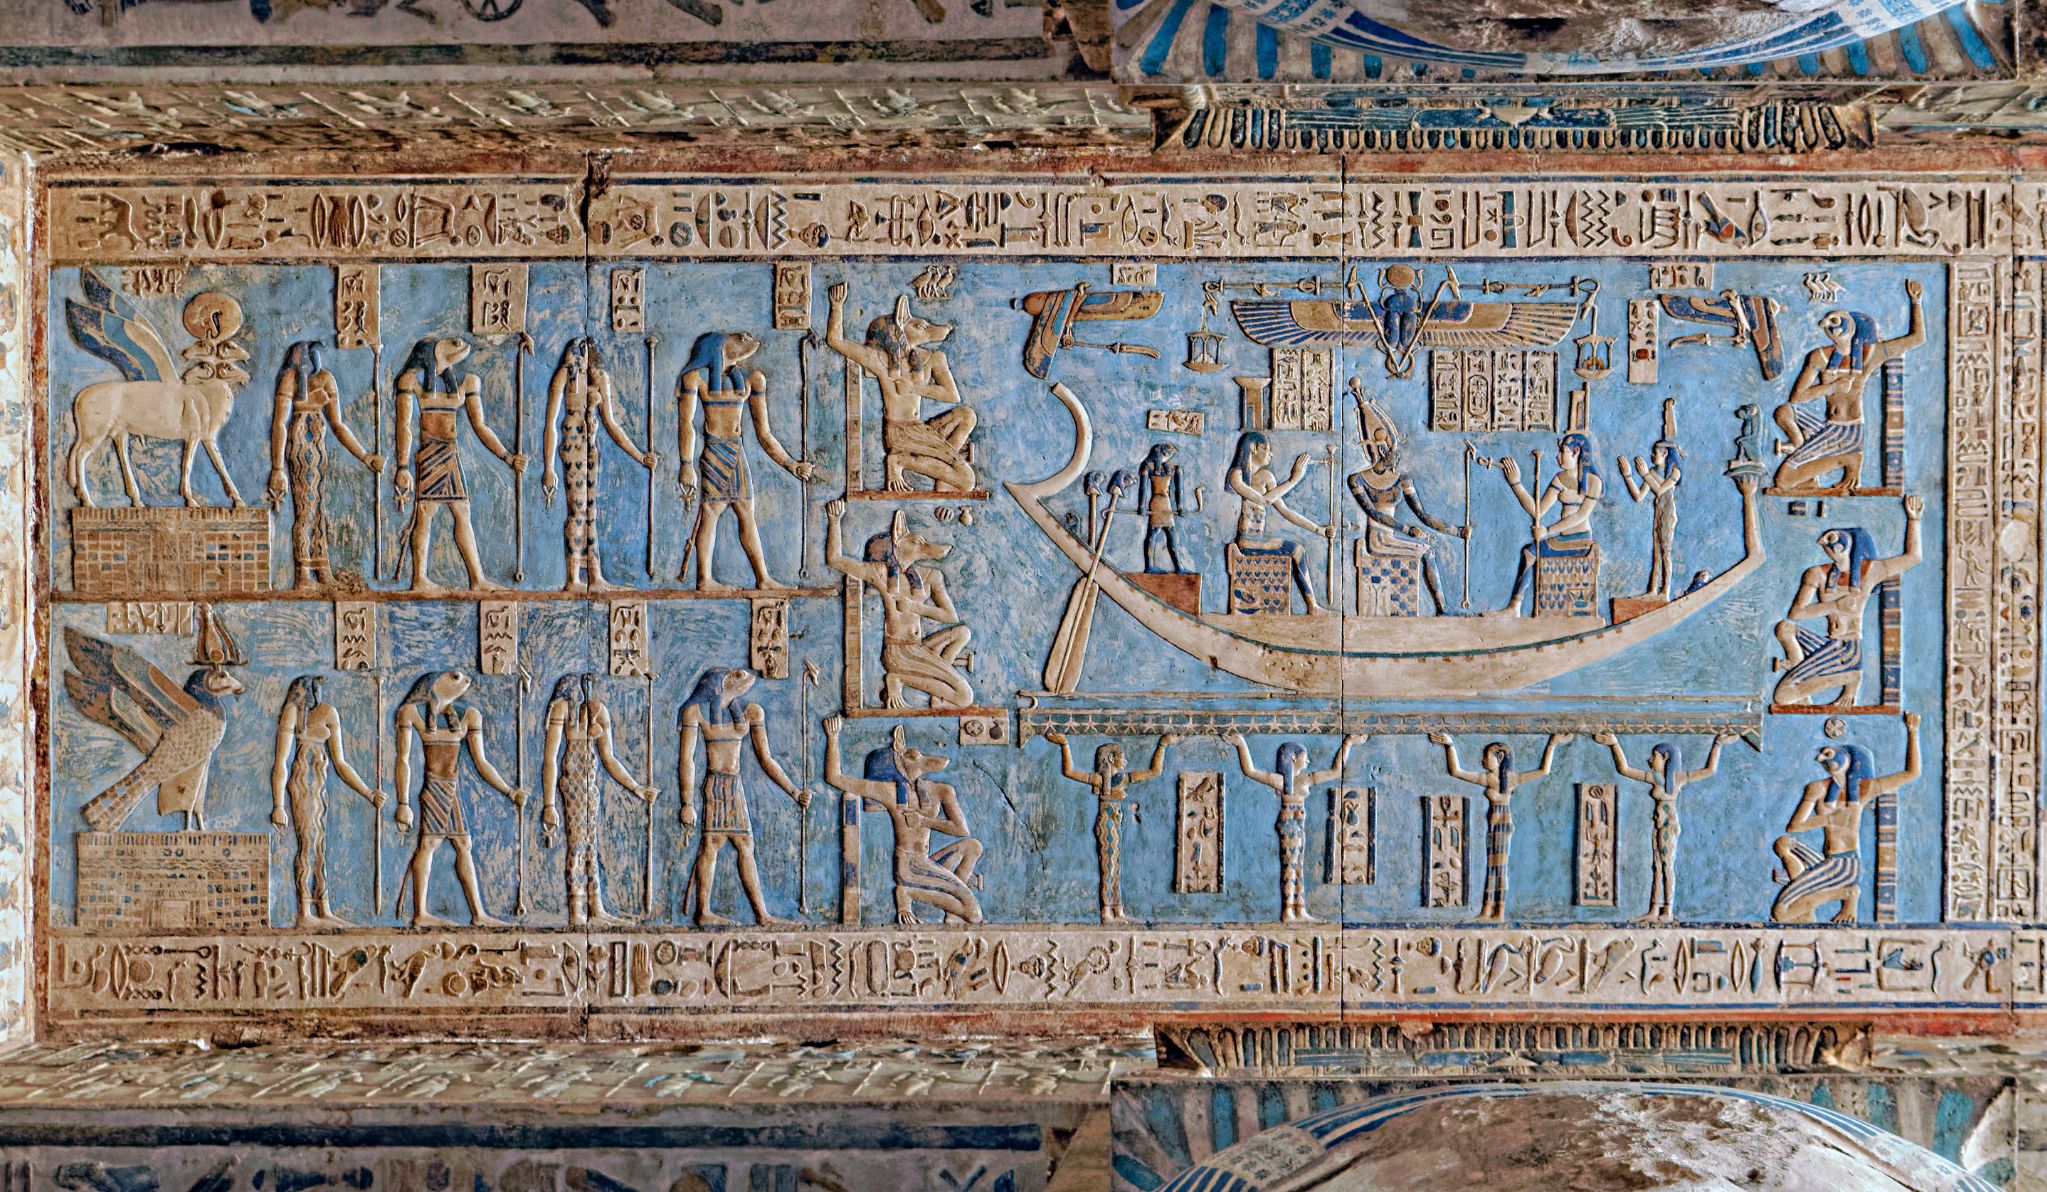 Les chambres à rêves, comme celle-ci au temple de Dendérah dans le gouvernorat égyptien de Qena, étaient autrefois utilisées pour aider à trouver un sens aux rêves (Creative Commons)